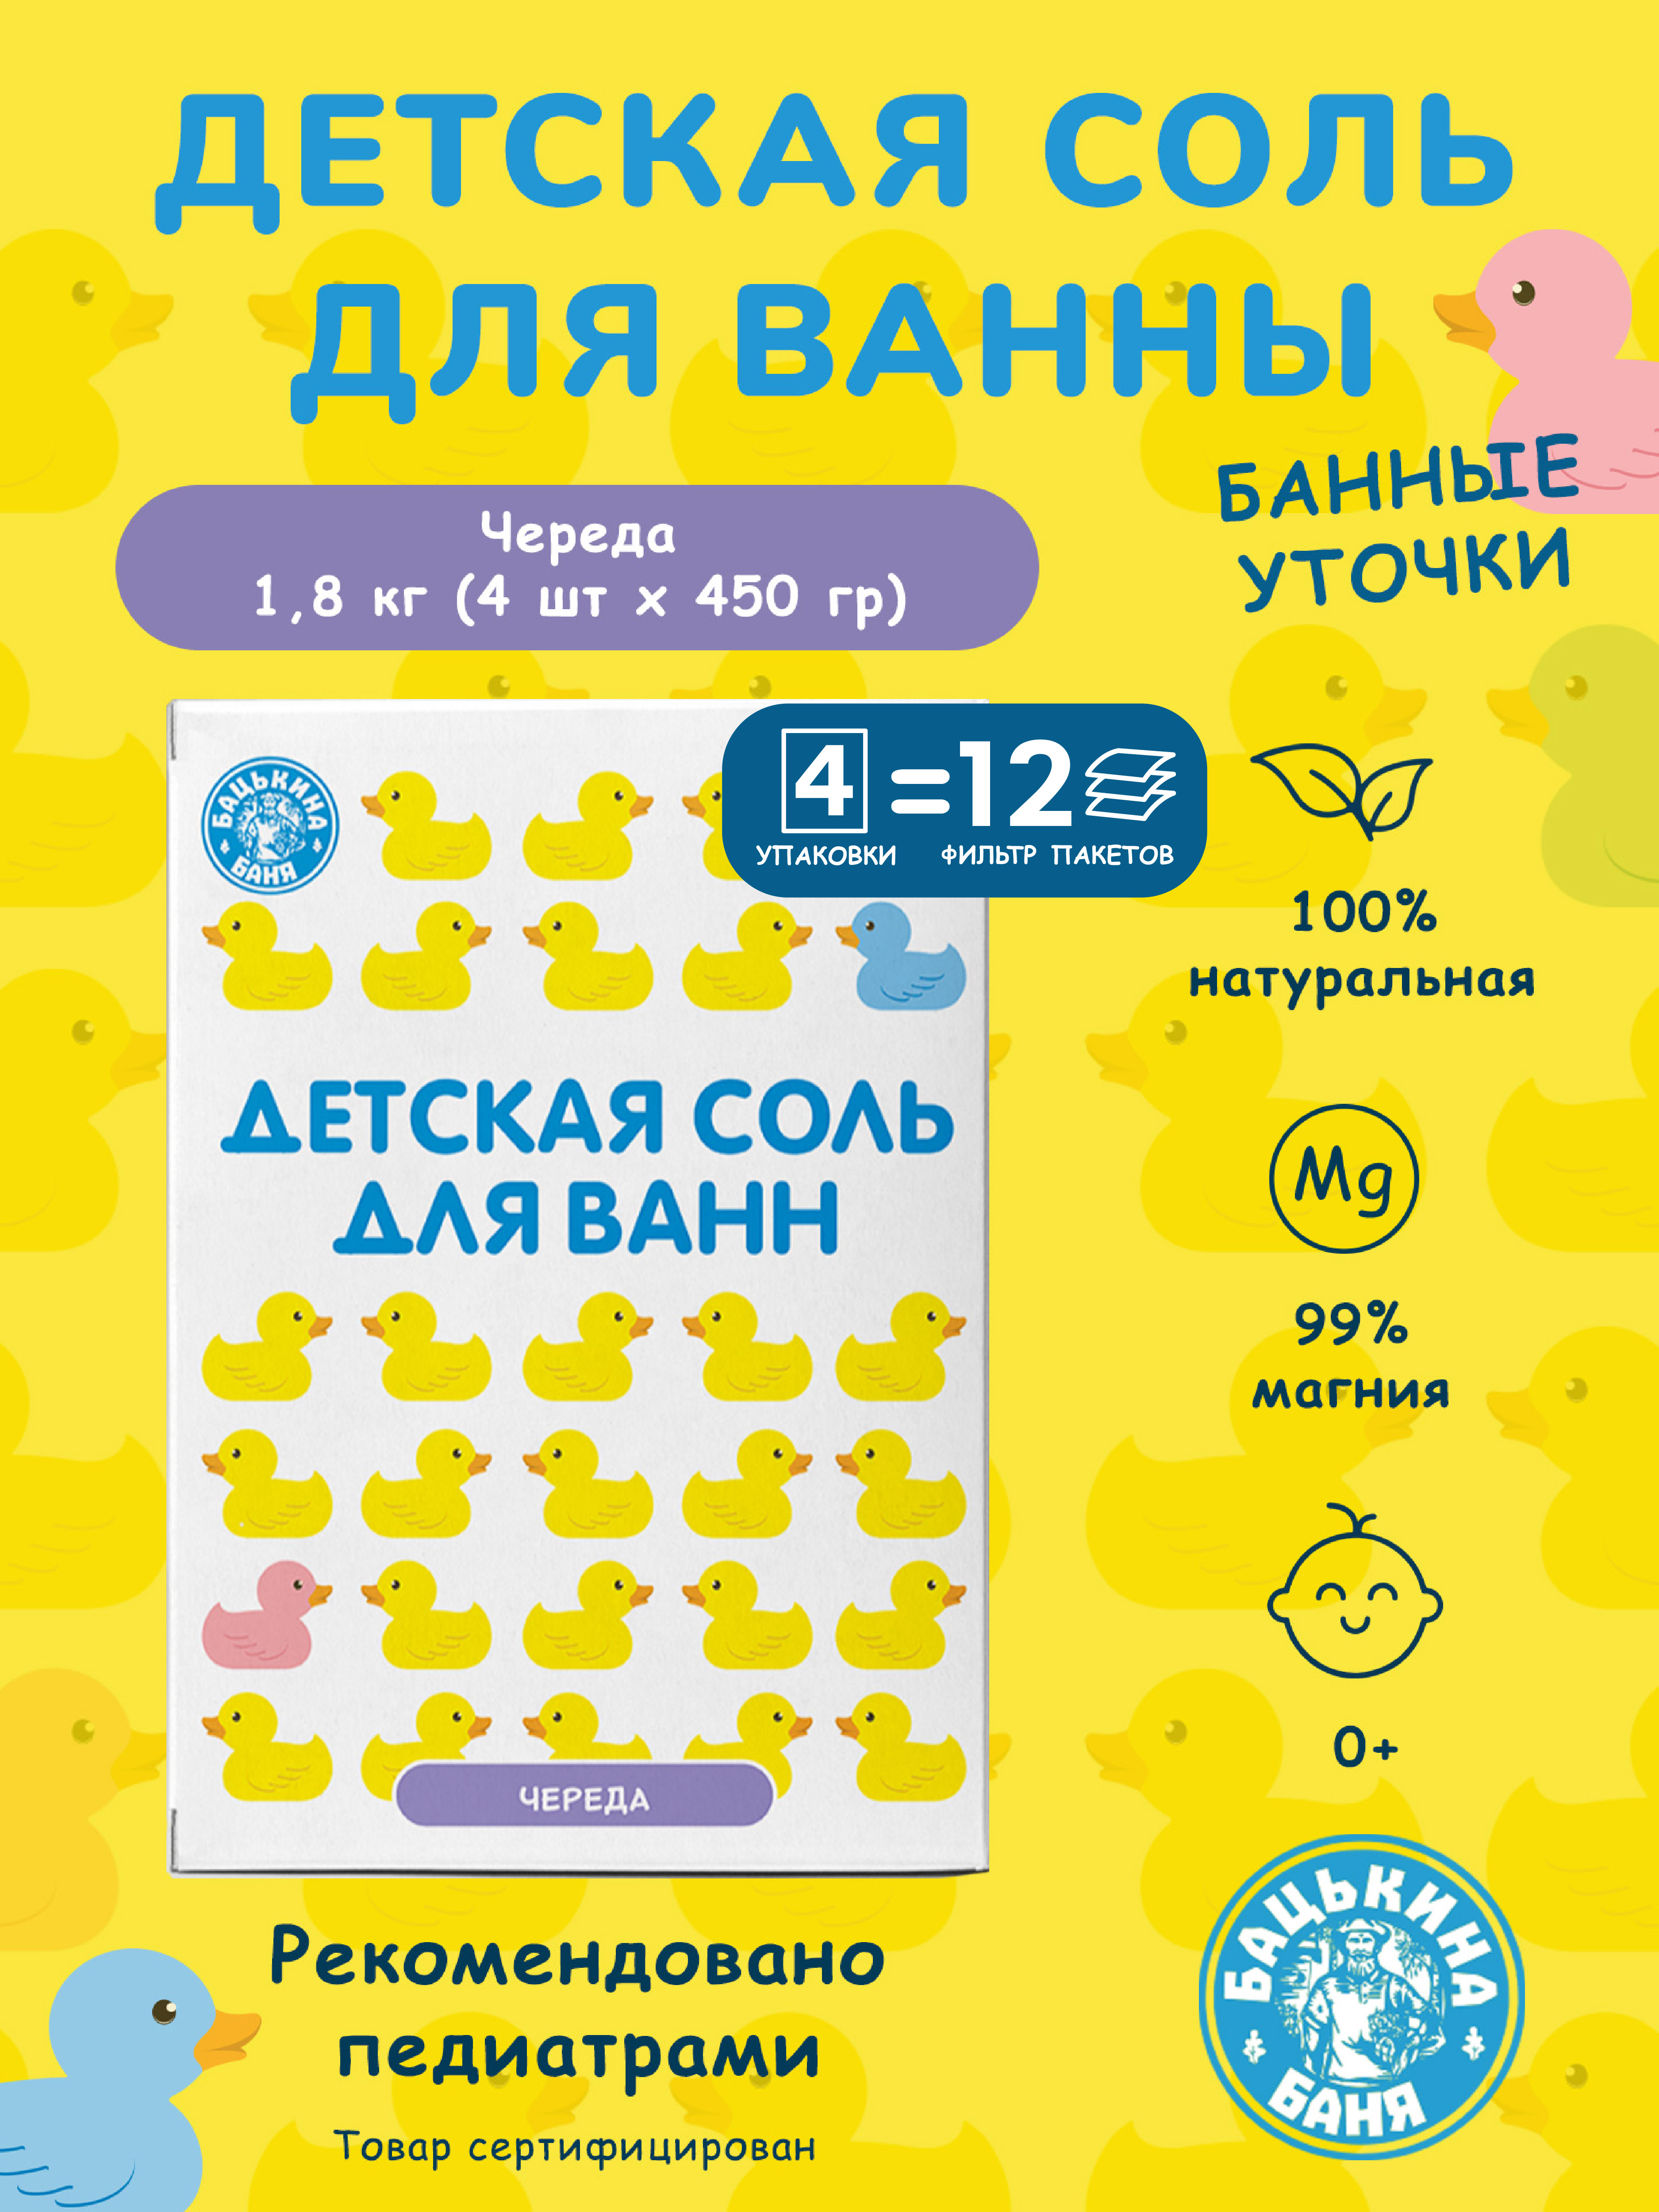 Детская соль для ванн Бацькина баня набор подарочный Череда 4 шт по 450 г - фото 2